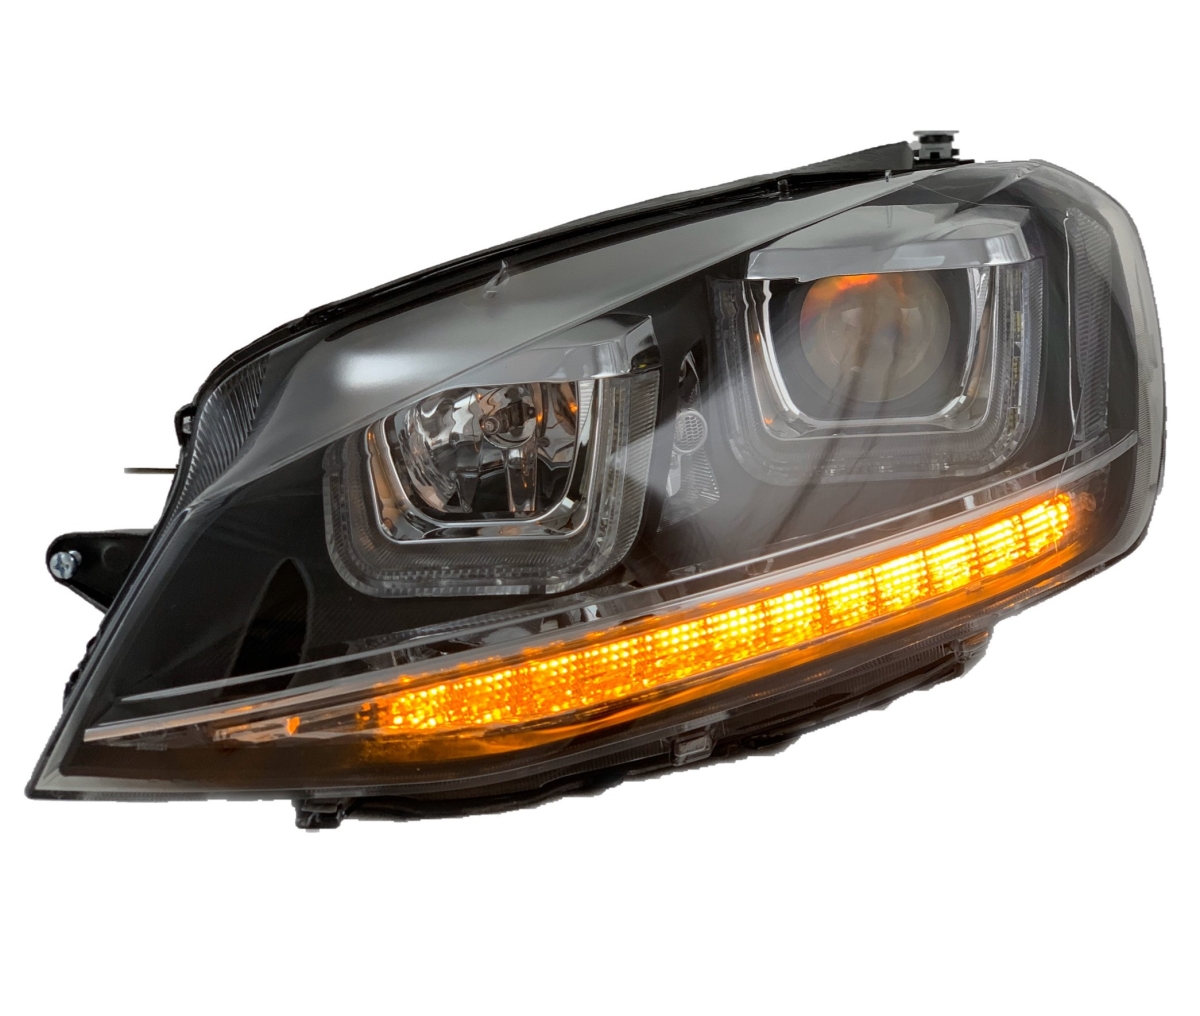 LED TAGFAHRLICHT Scheinwerfer für VW Golf 7 VII 13+ mit LED-Blinker